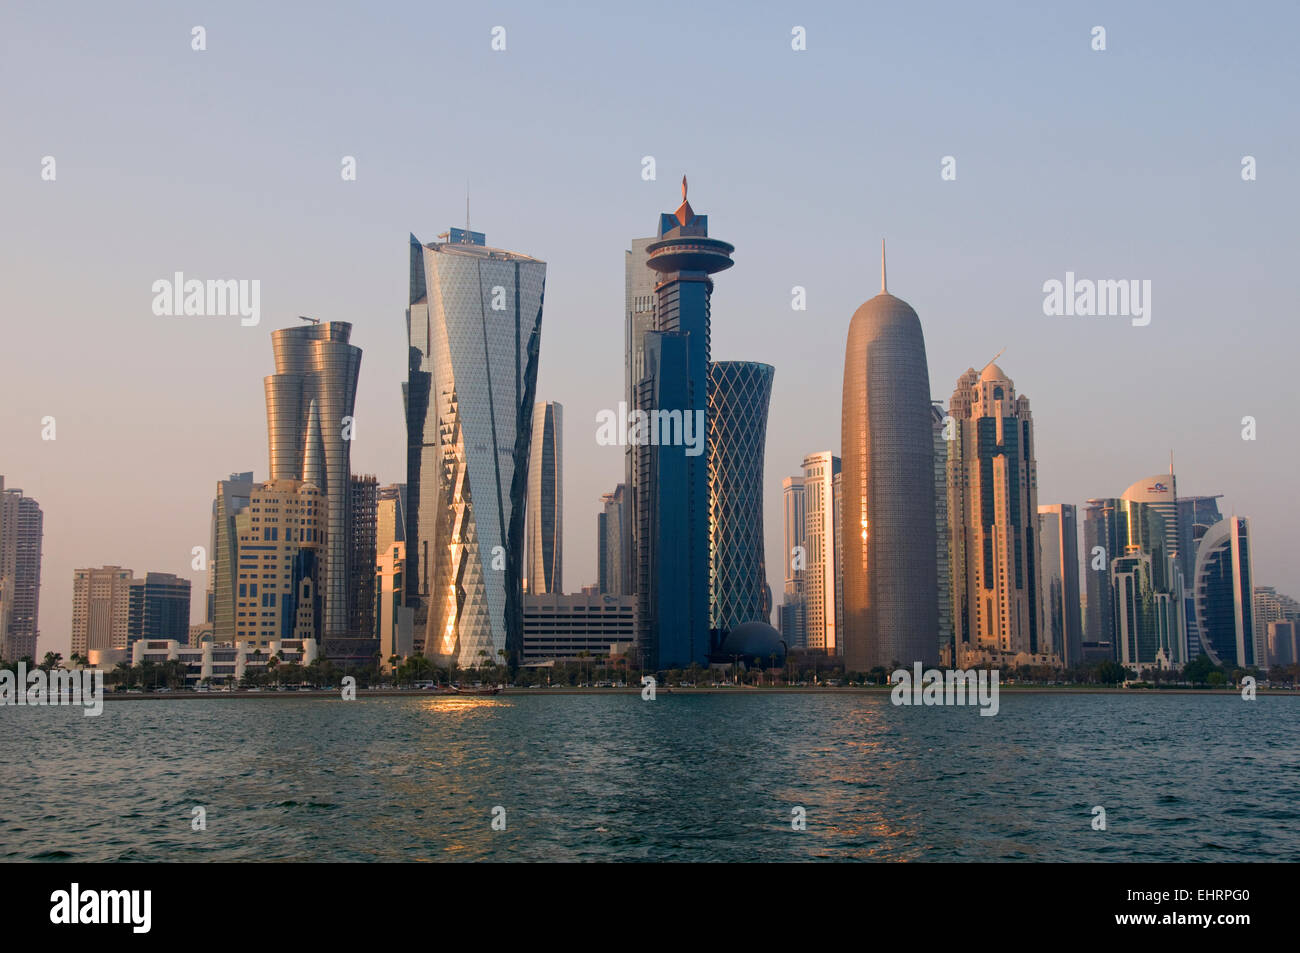 La Corniche, sur les toits de la ville, Doha, Qatar. Moyen Orient. Banque D'Images